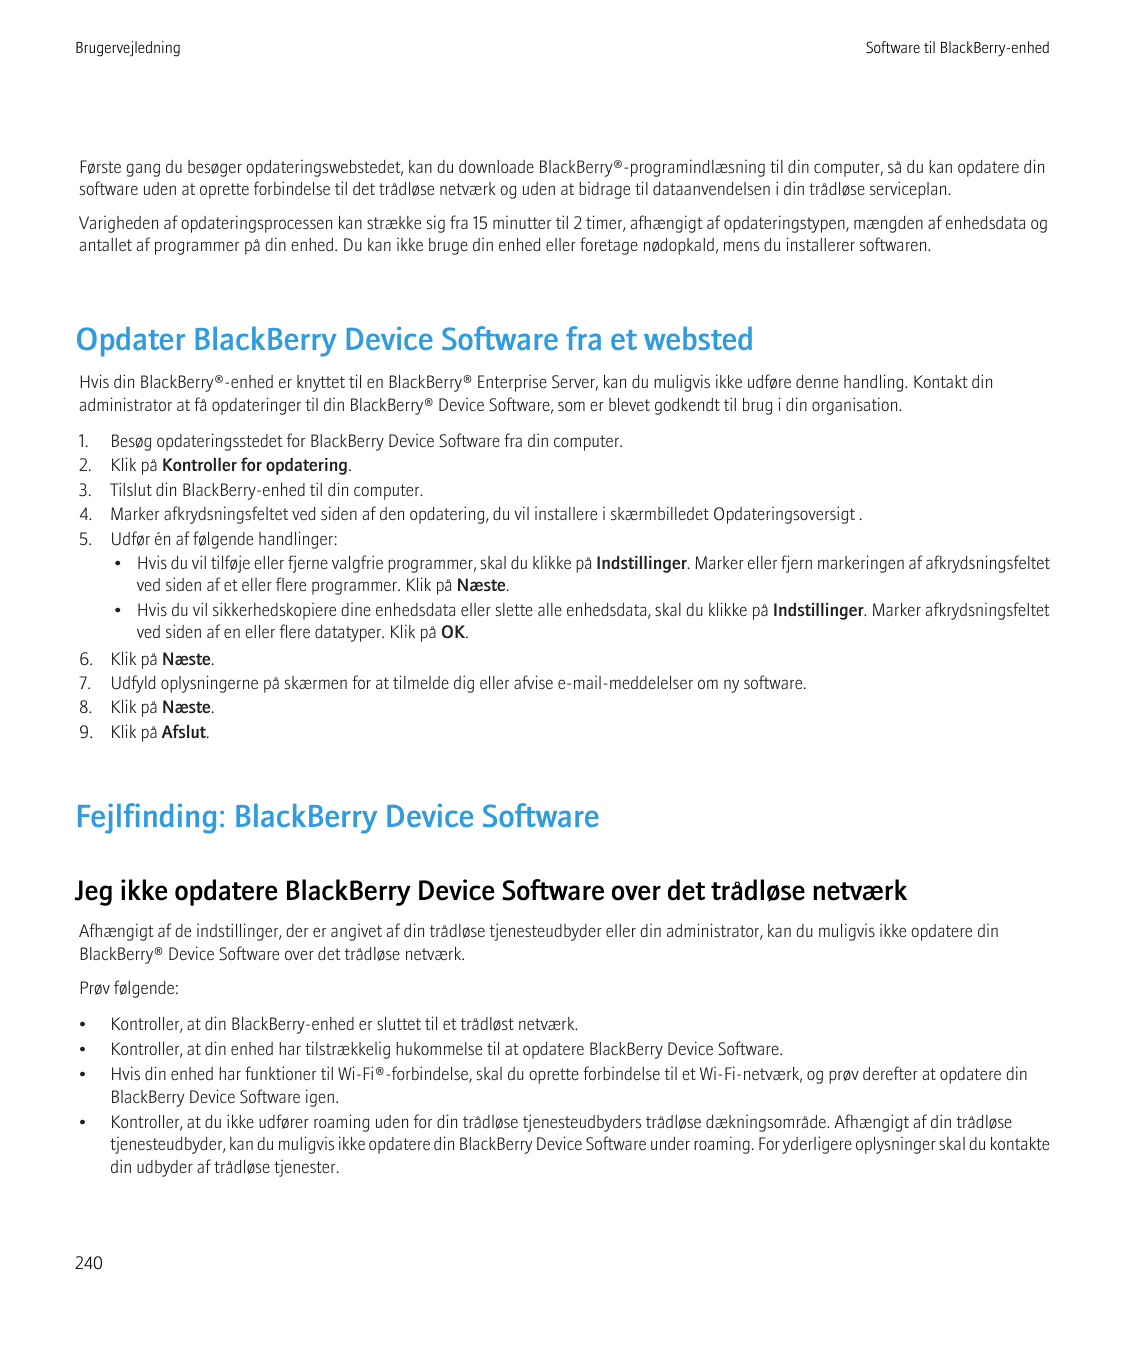 BrugervejledningSoftware til BlackBerry-enhedFørste gang du besøger opdateringswebstedet, kan du downloade BlackBerry®-programin